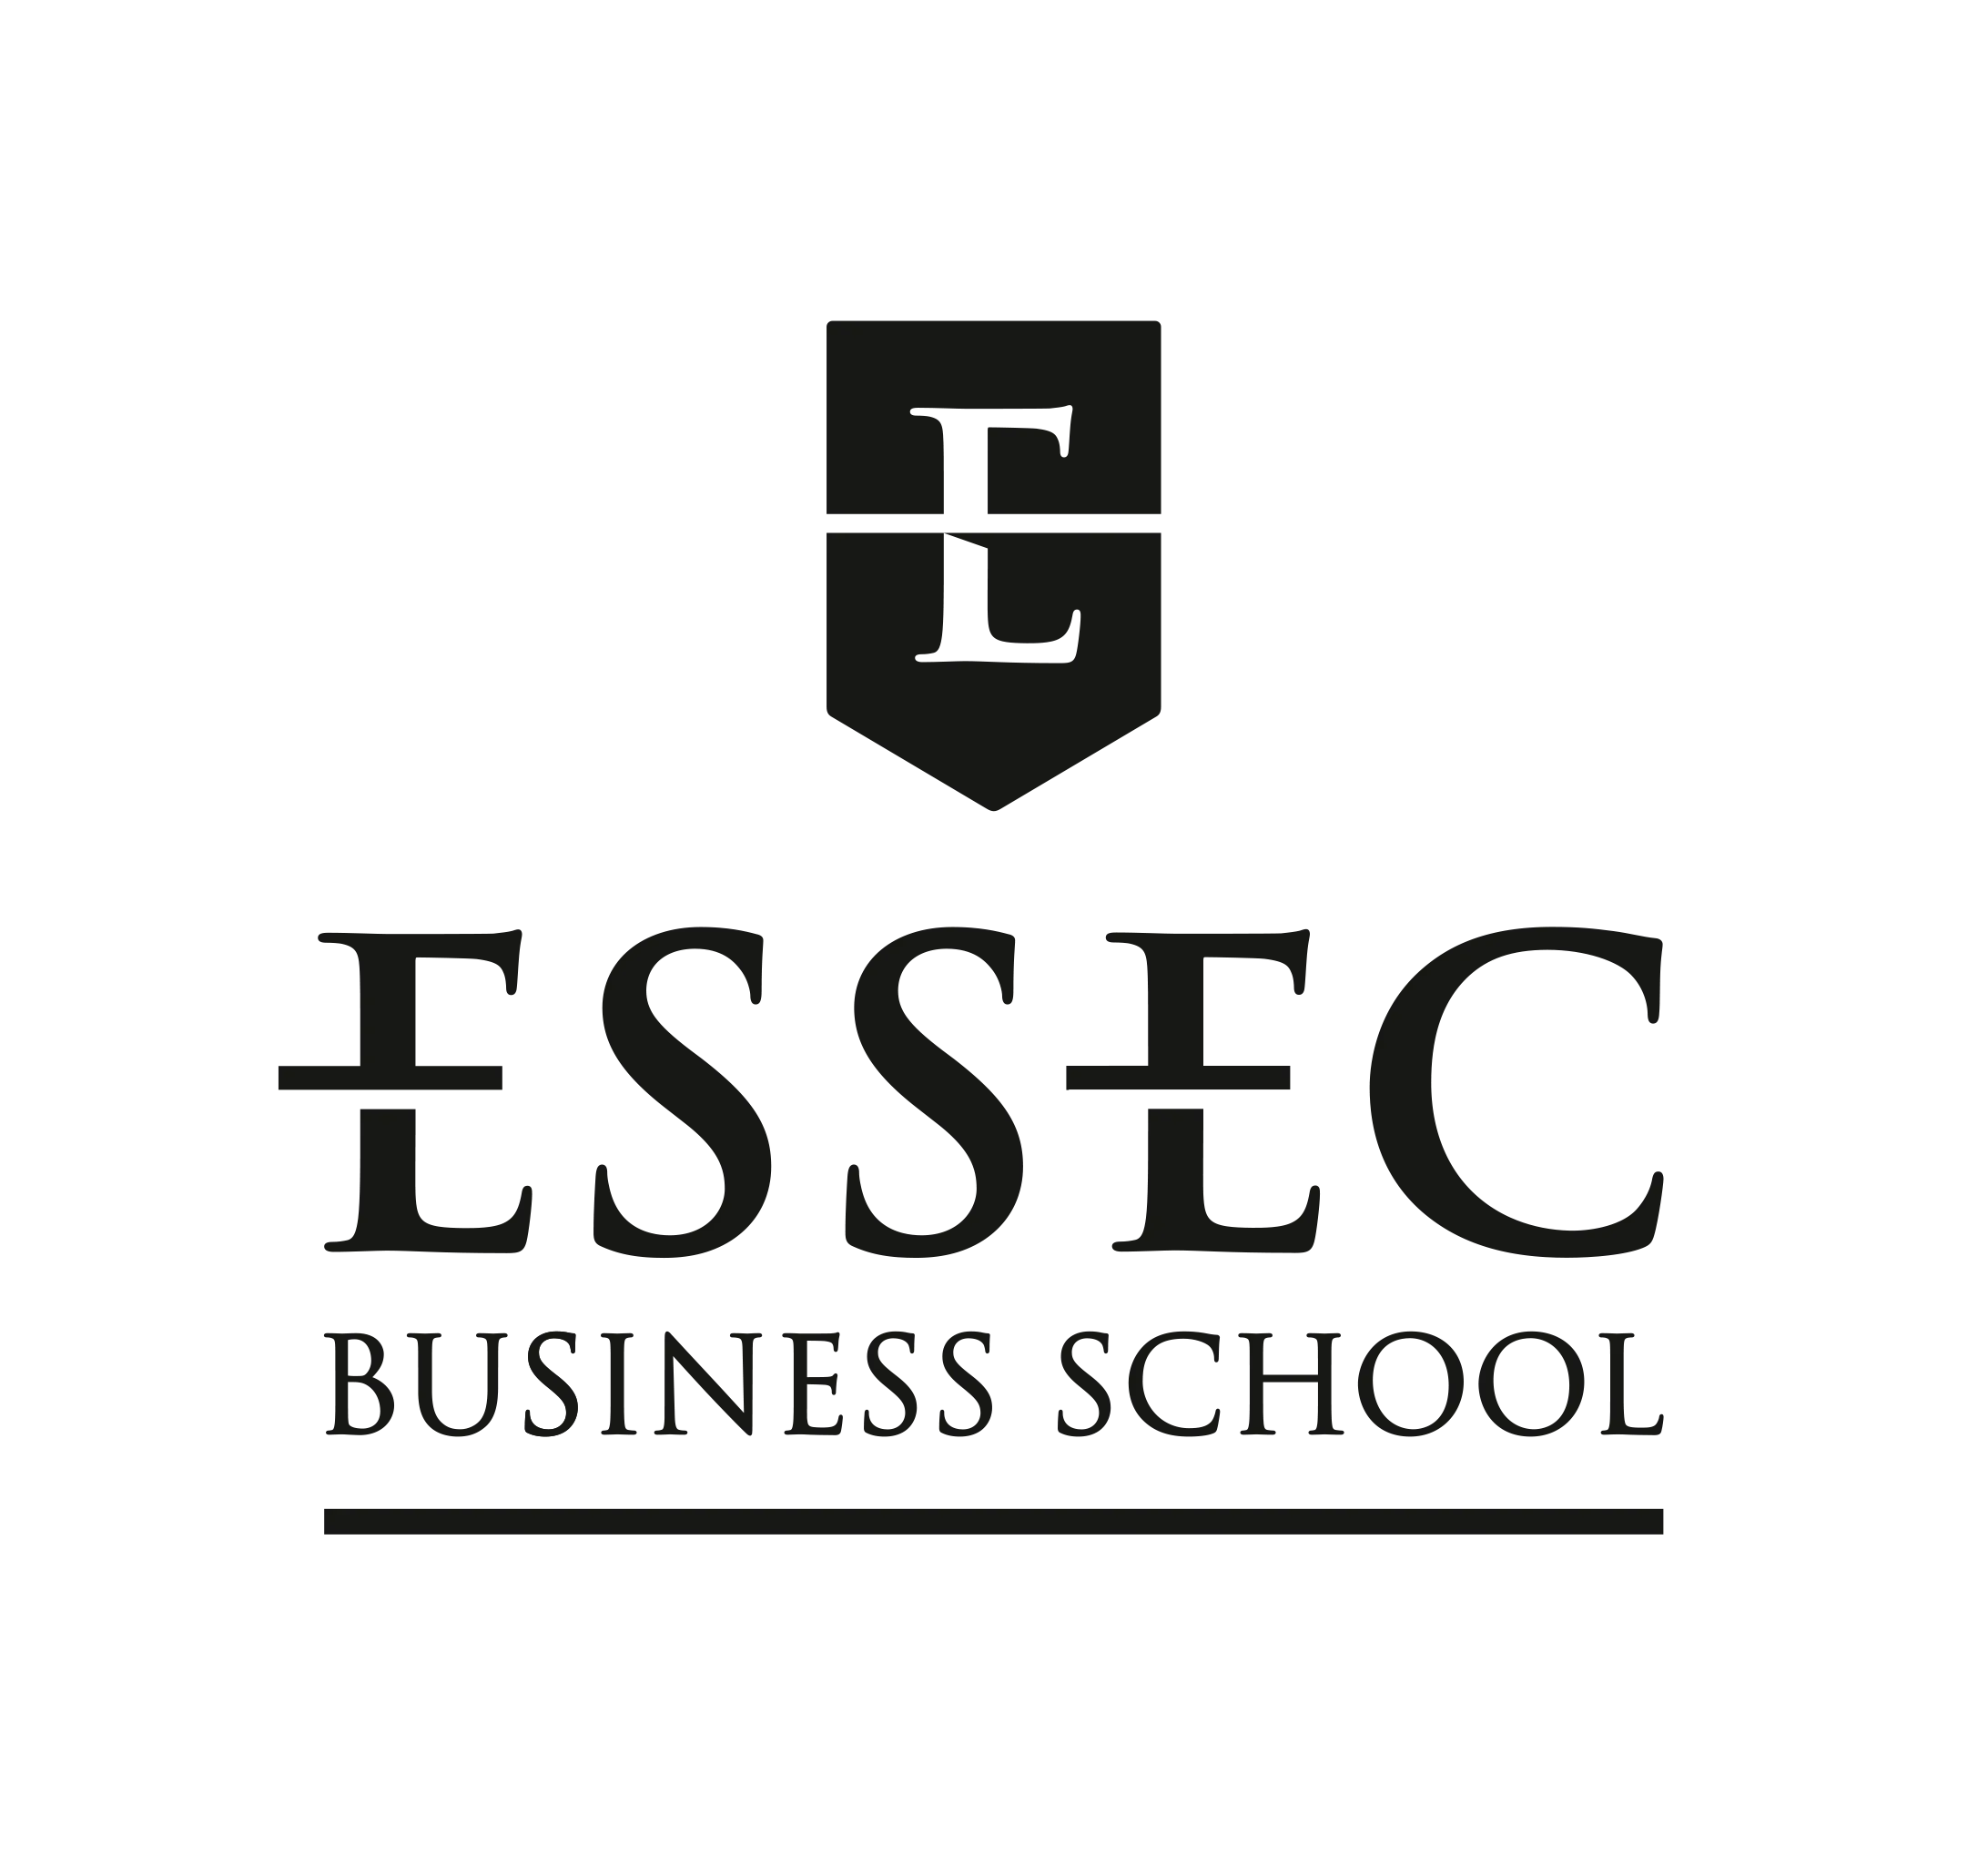 ESSEC logo